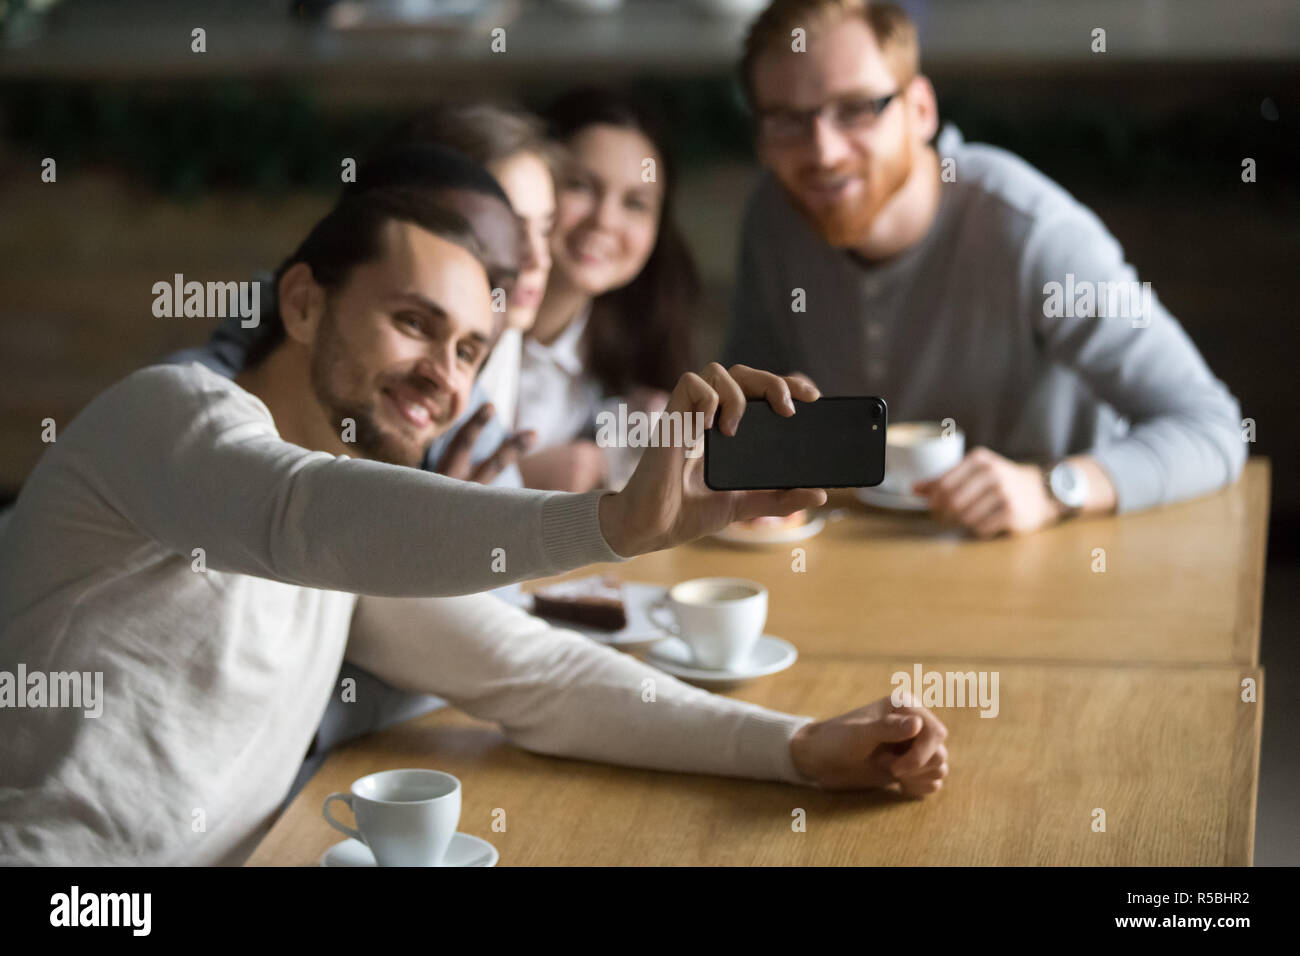 La millenaria guy holding smartphone rendendo Self-portrait immagine a cordiale incontro con i colleghi in cafe, happy amici sorriso per selfie seduta a Foto Stock